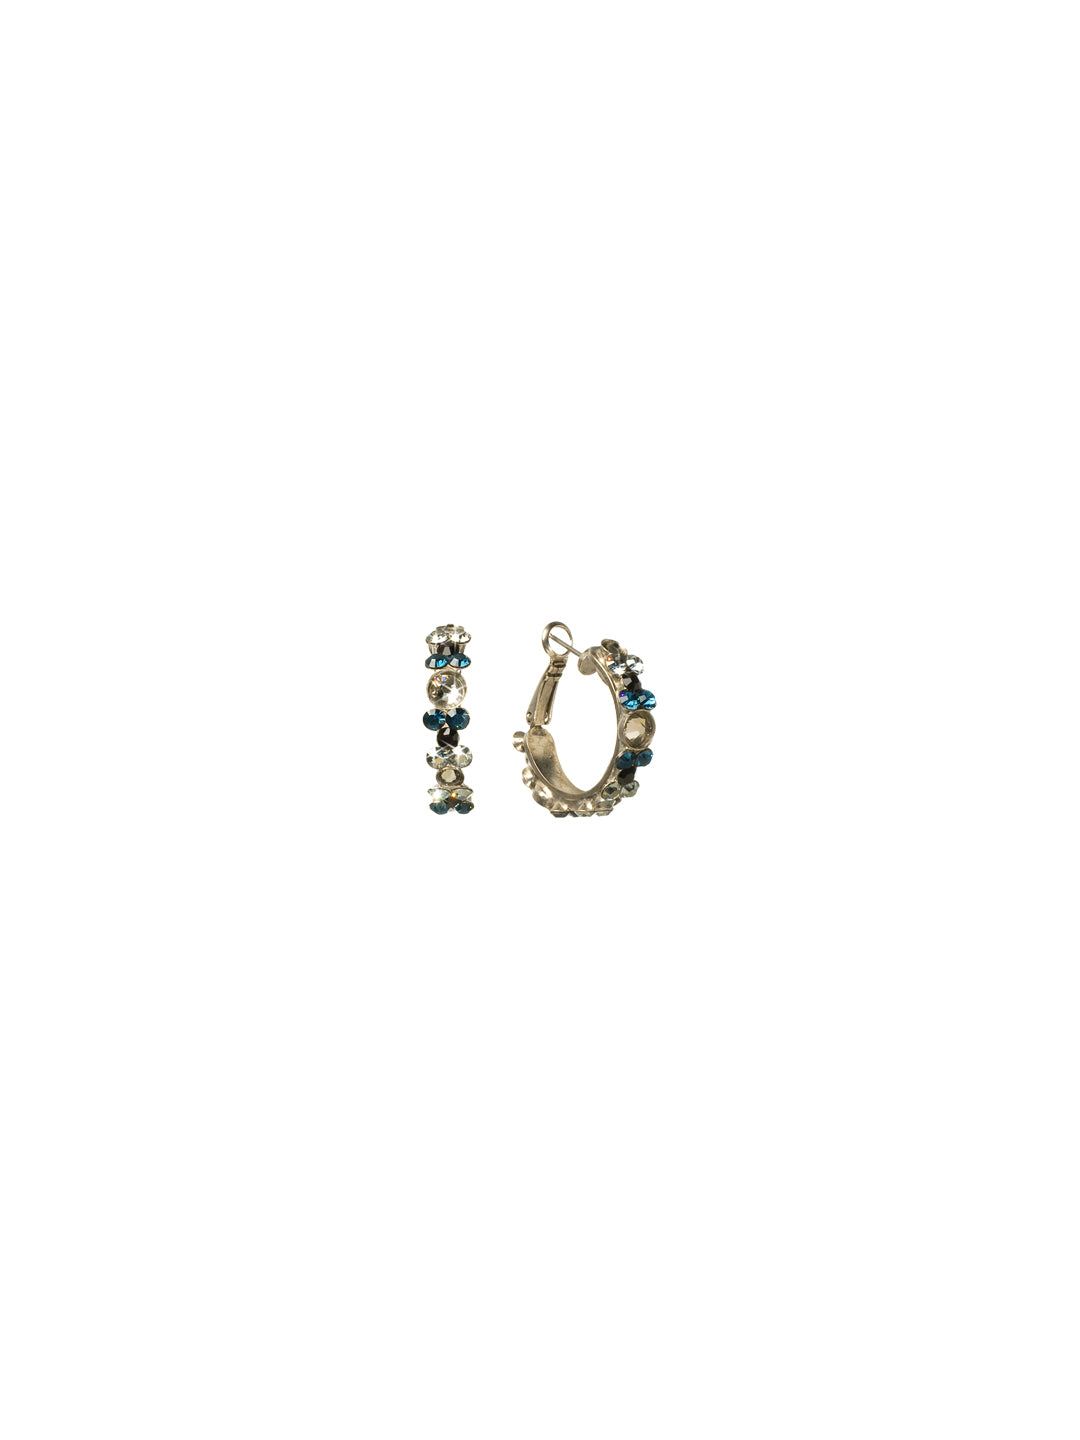 Floral Hoop Earrings - EBP15ASMLW